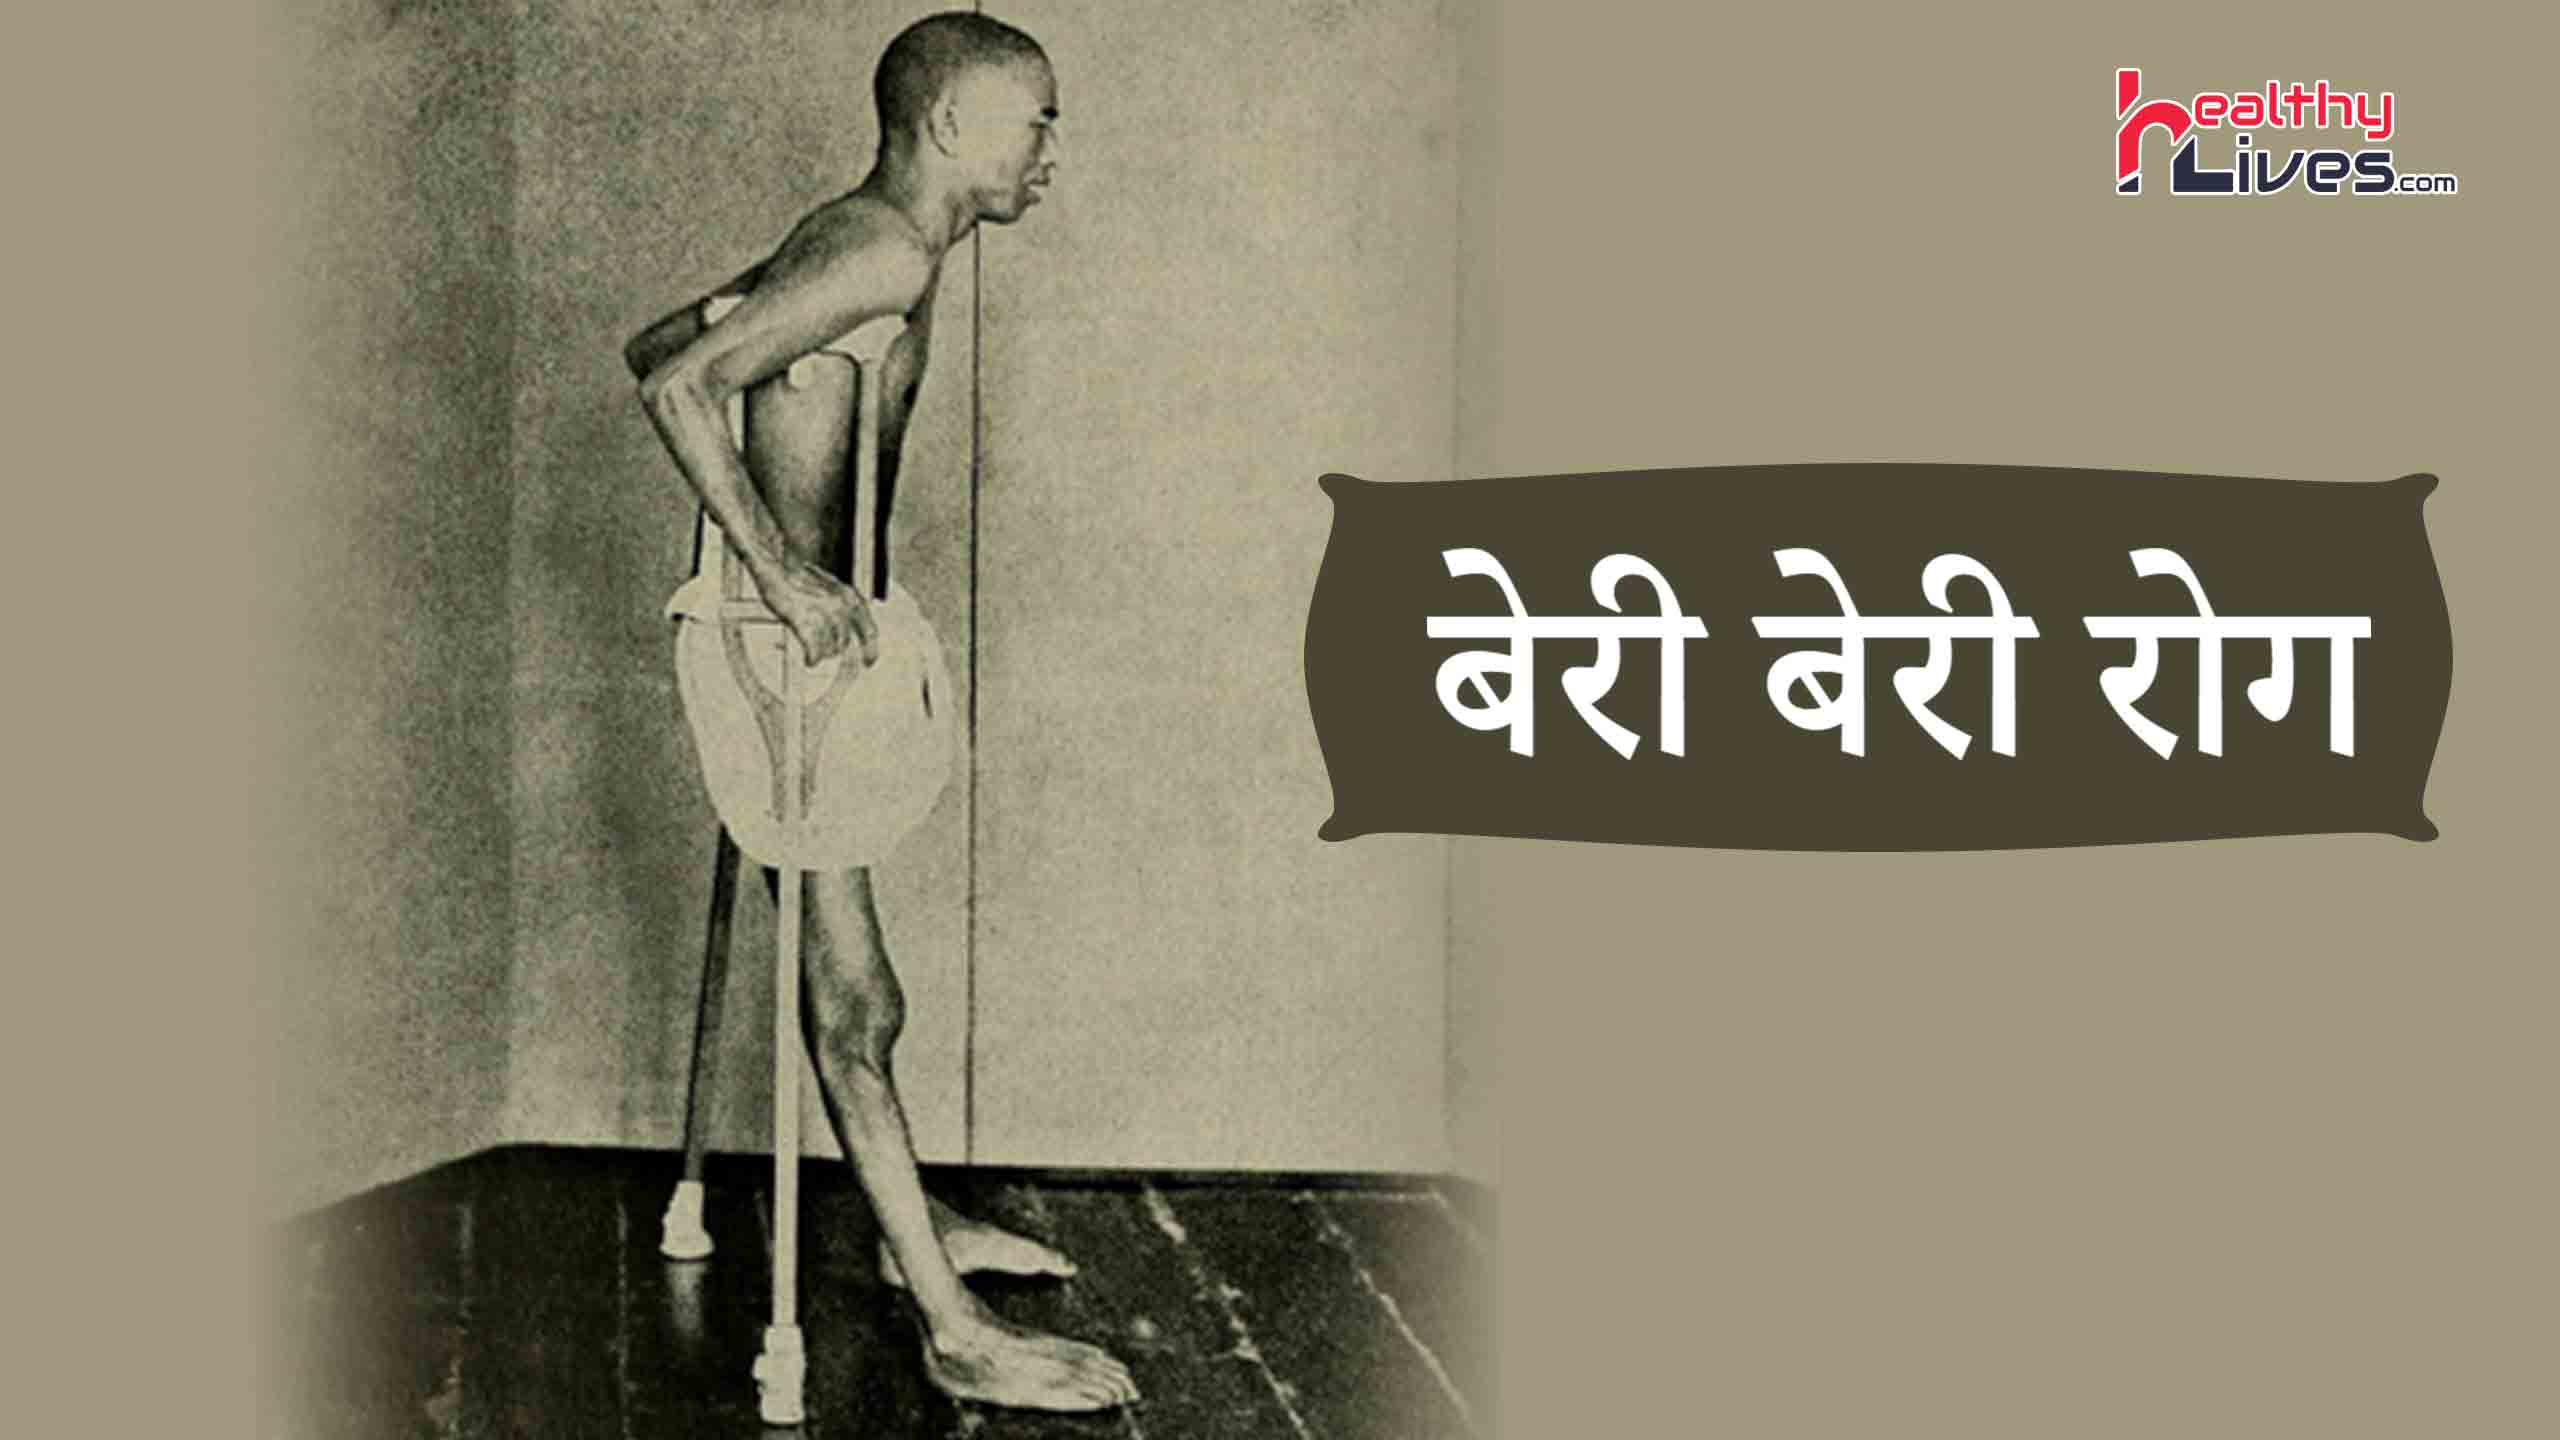 Beriberi Disease in Hindi: बेरी-बेरी रोग से जुड़ी उपयोगी जानकारियां